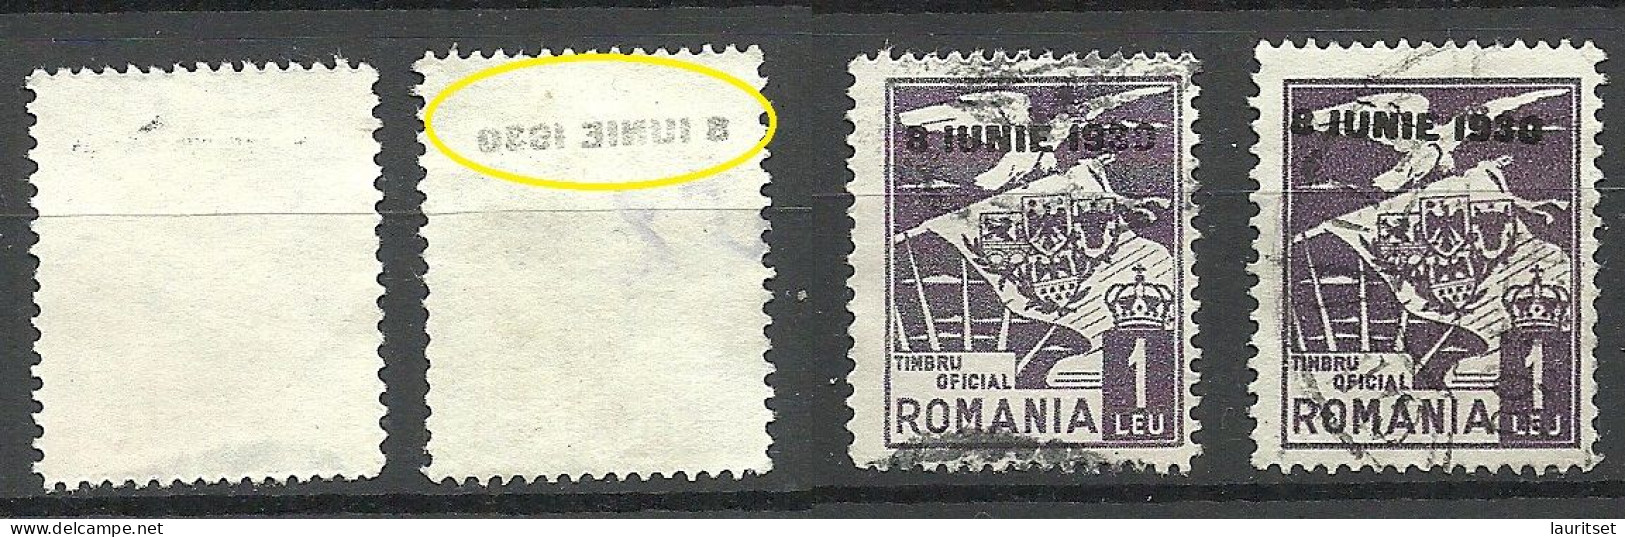 ROMANIA Rumänien 1930 Dienstmarke Normal + Variety Set Off Of OPT Abklatsch D. Aufdruckes - Dienstzegels